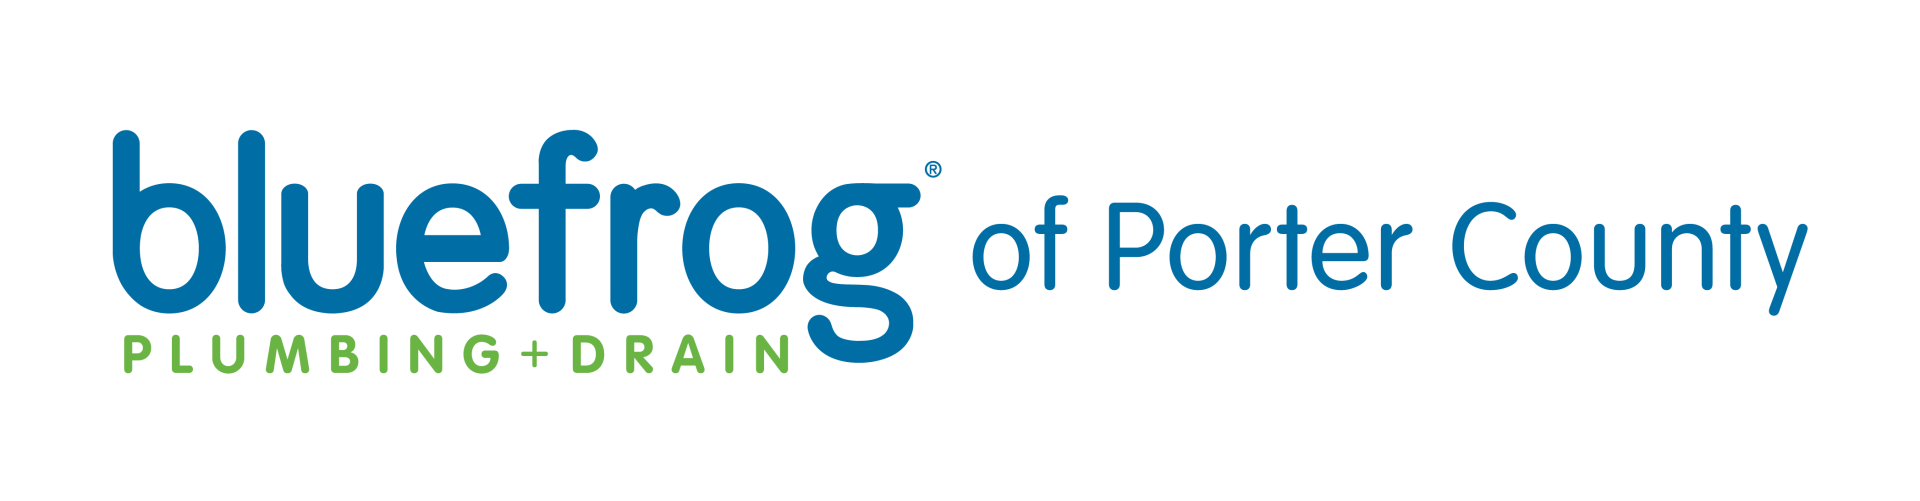 Porter County IN Logo